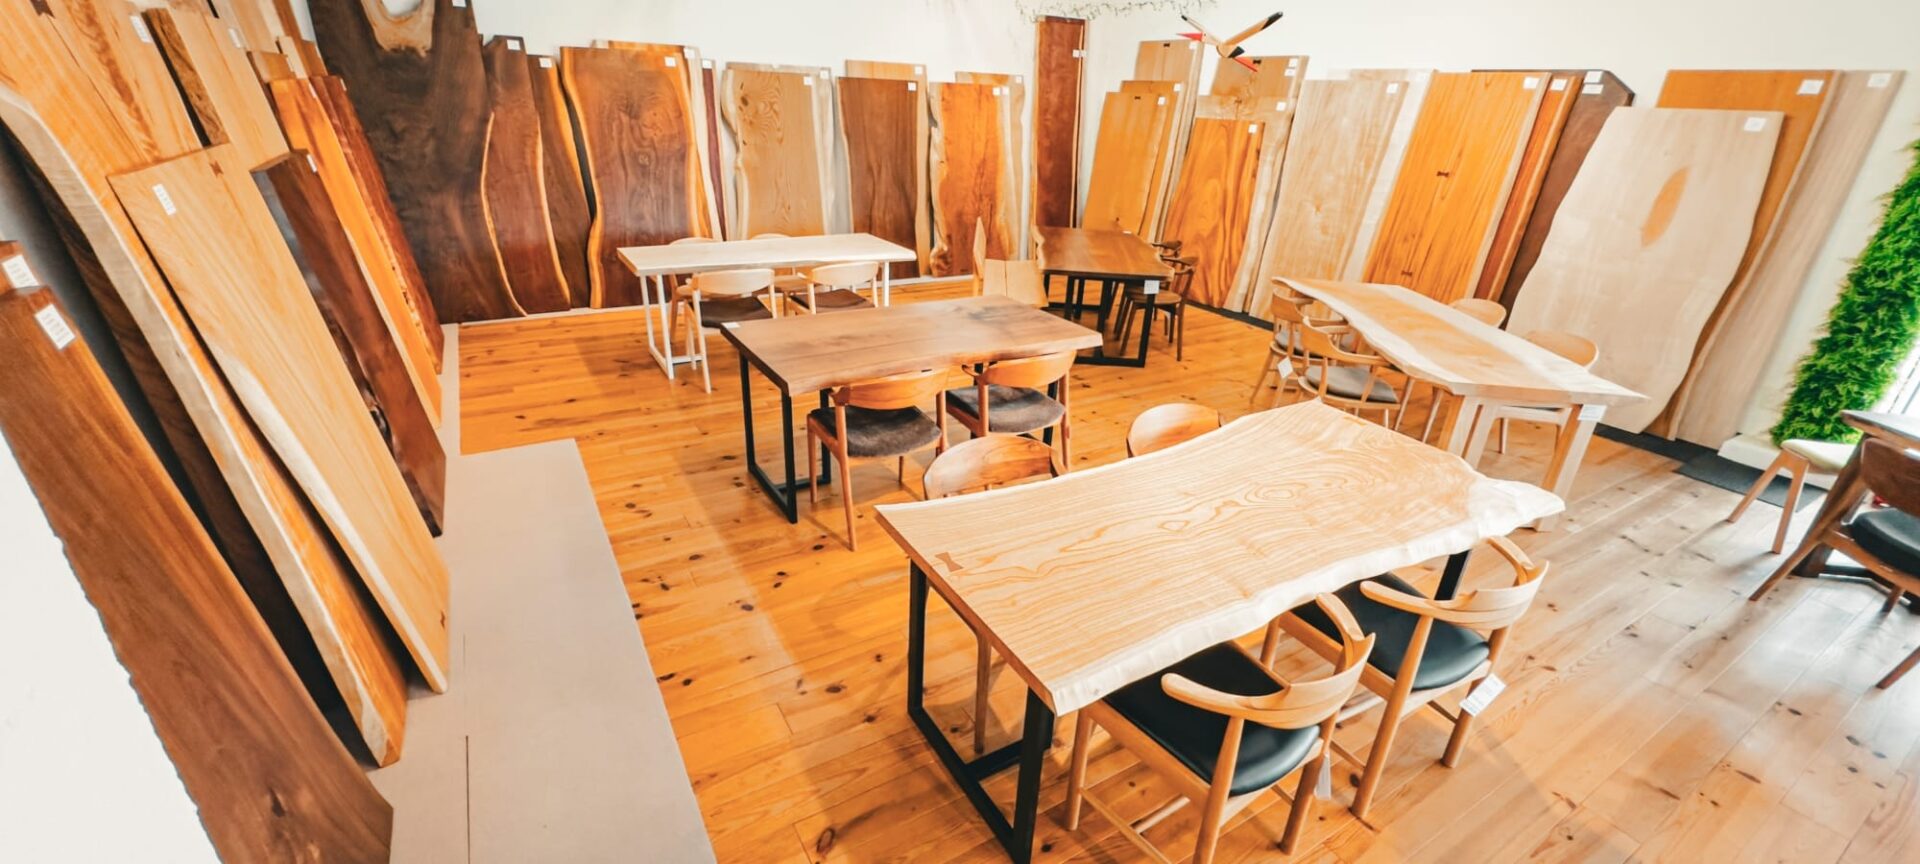 大阪枚方で一枚板テーブル・家具修理ならハーモニックハウスワークショップ